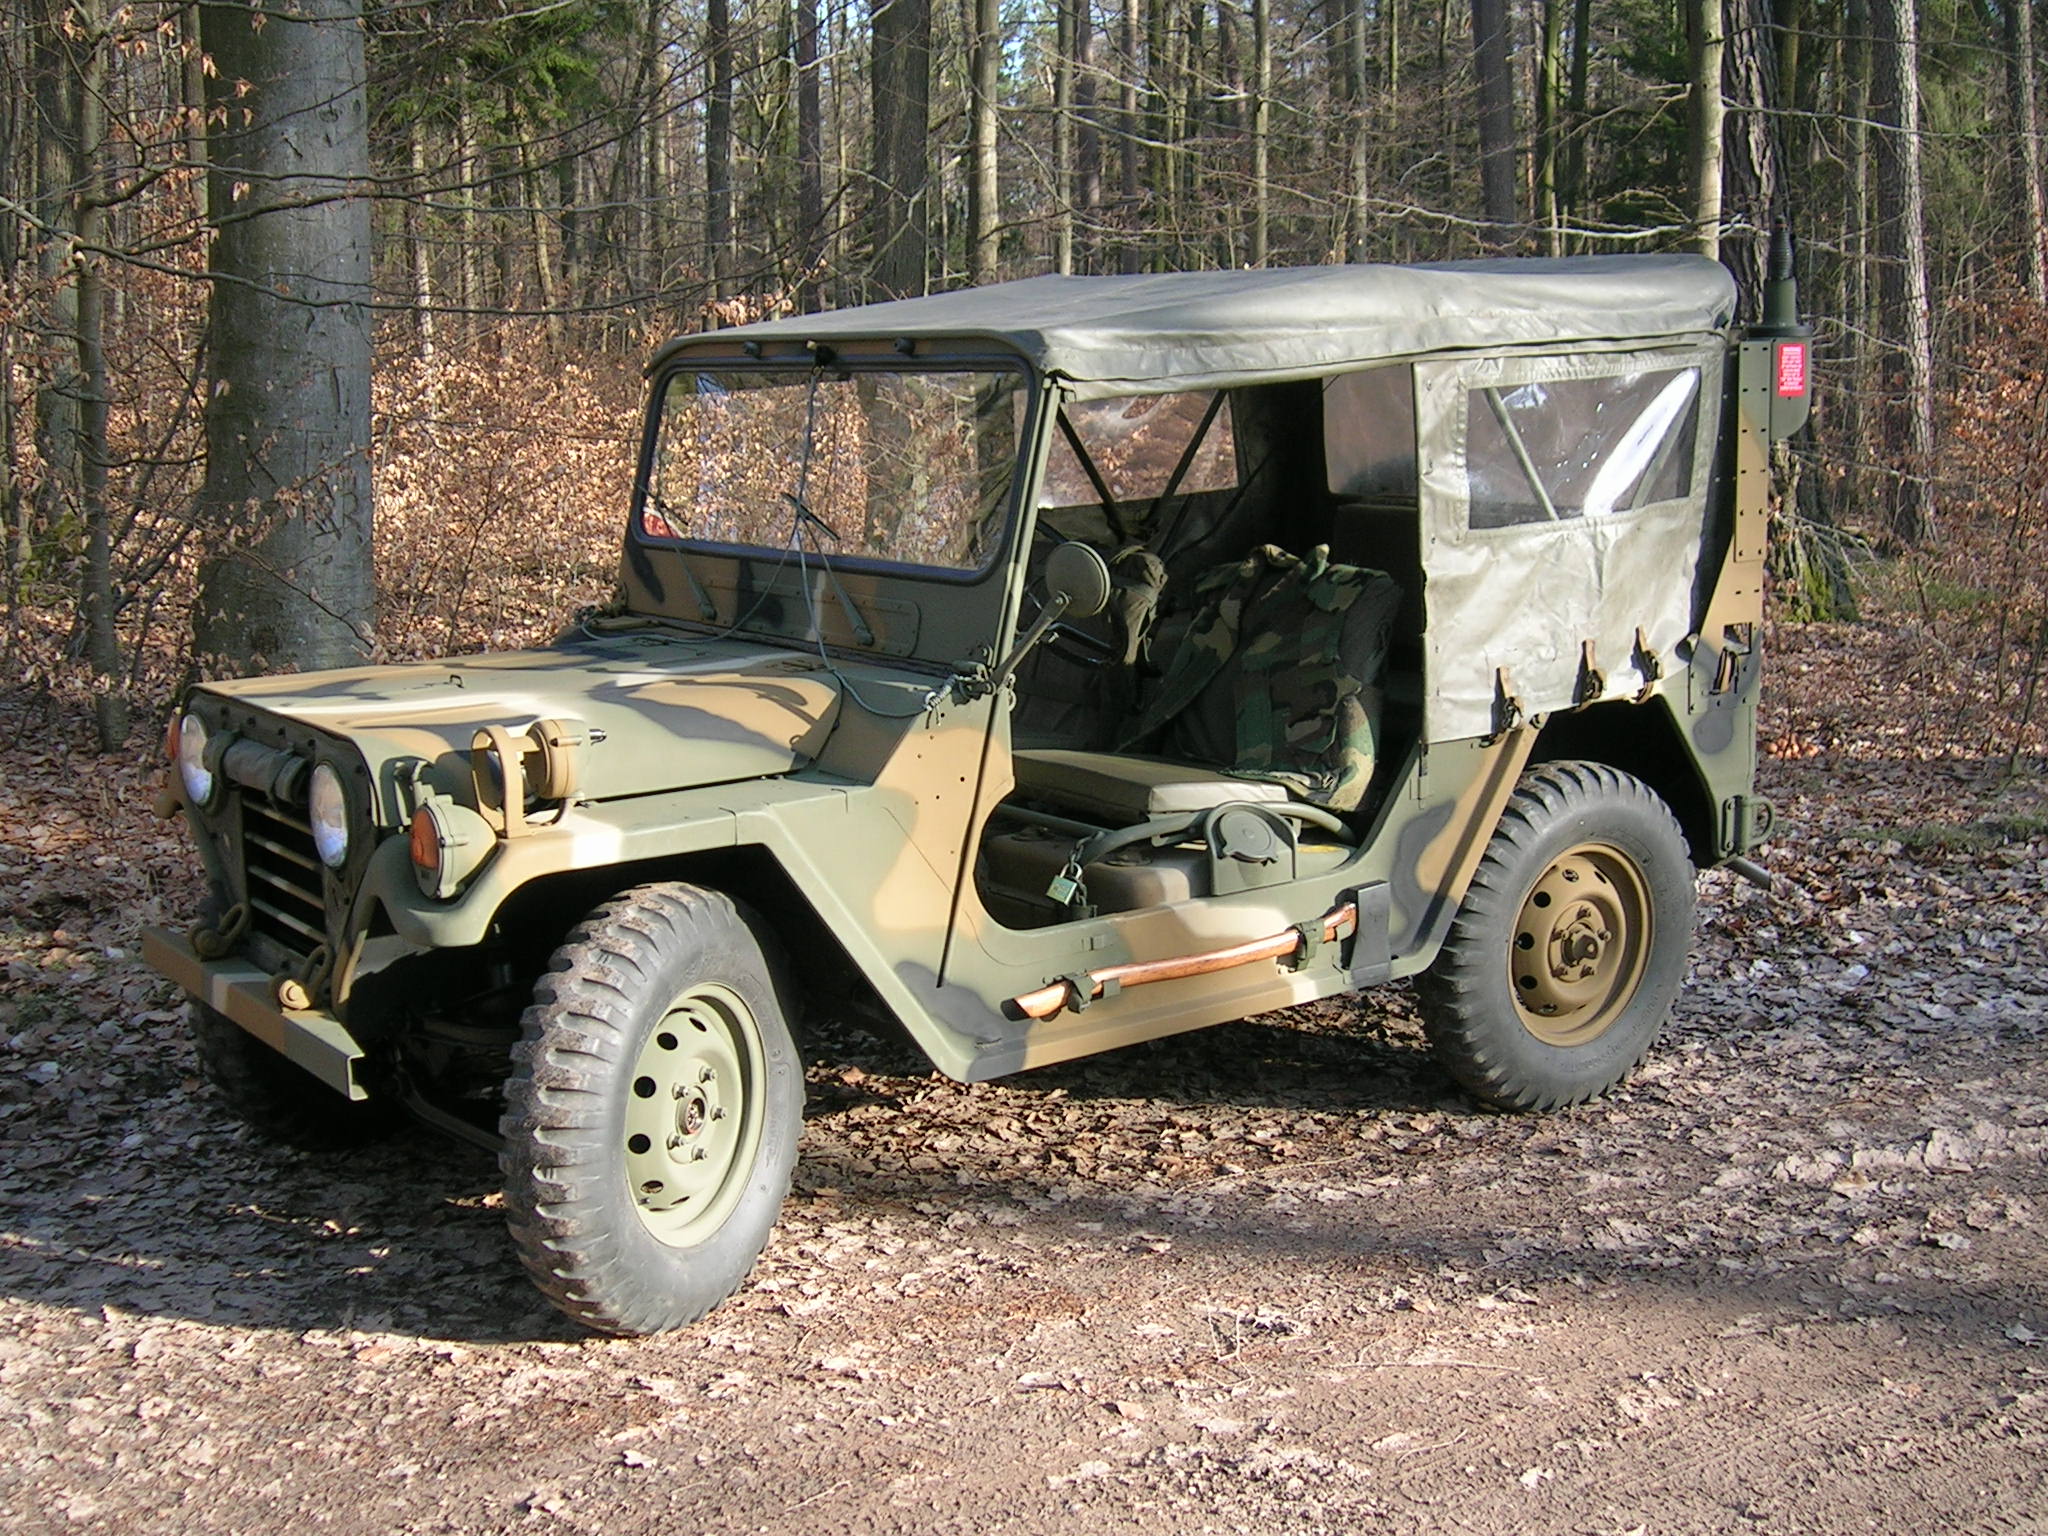 Mein Ford Mutt M151 A2 im Eschenauer Wald